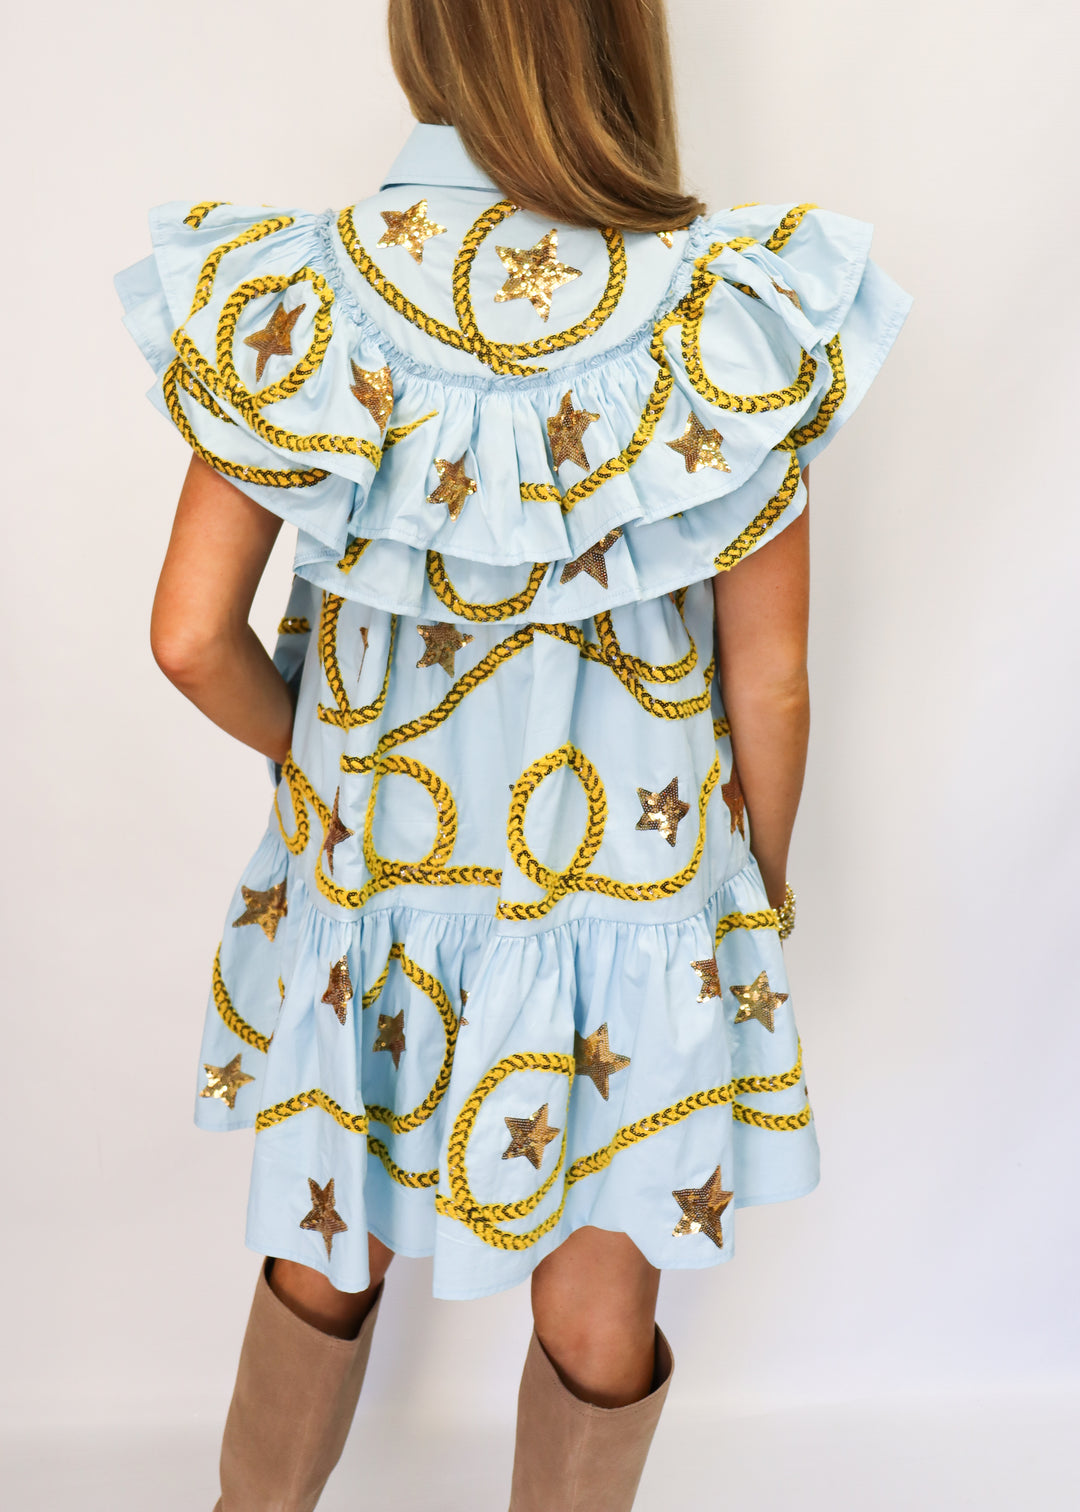 Queen of Sparkles Light Blue Star & Rope Ruffle Dress - Gabrielle's Biloxi